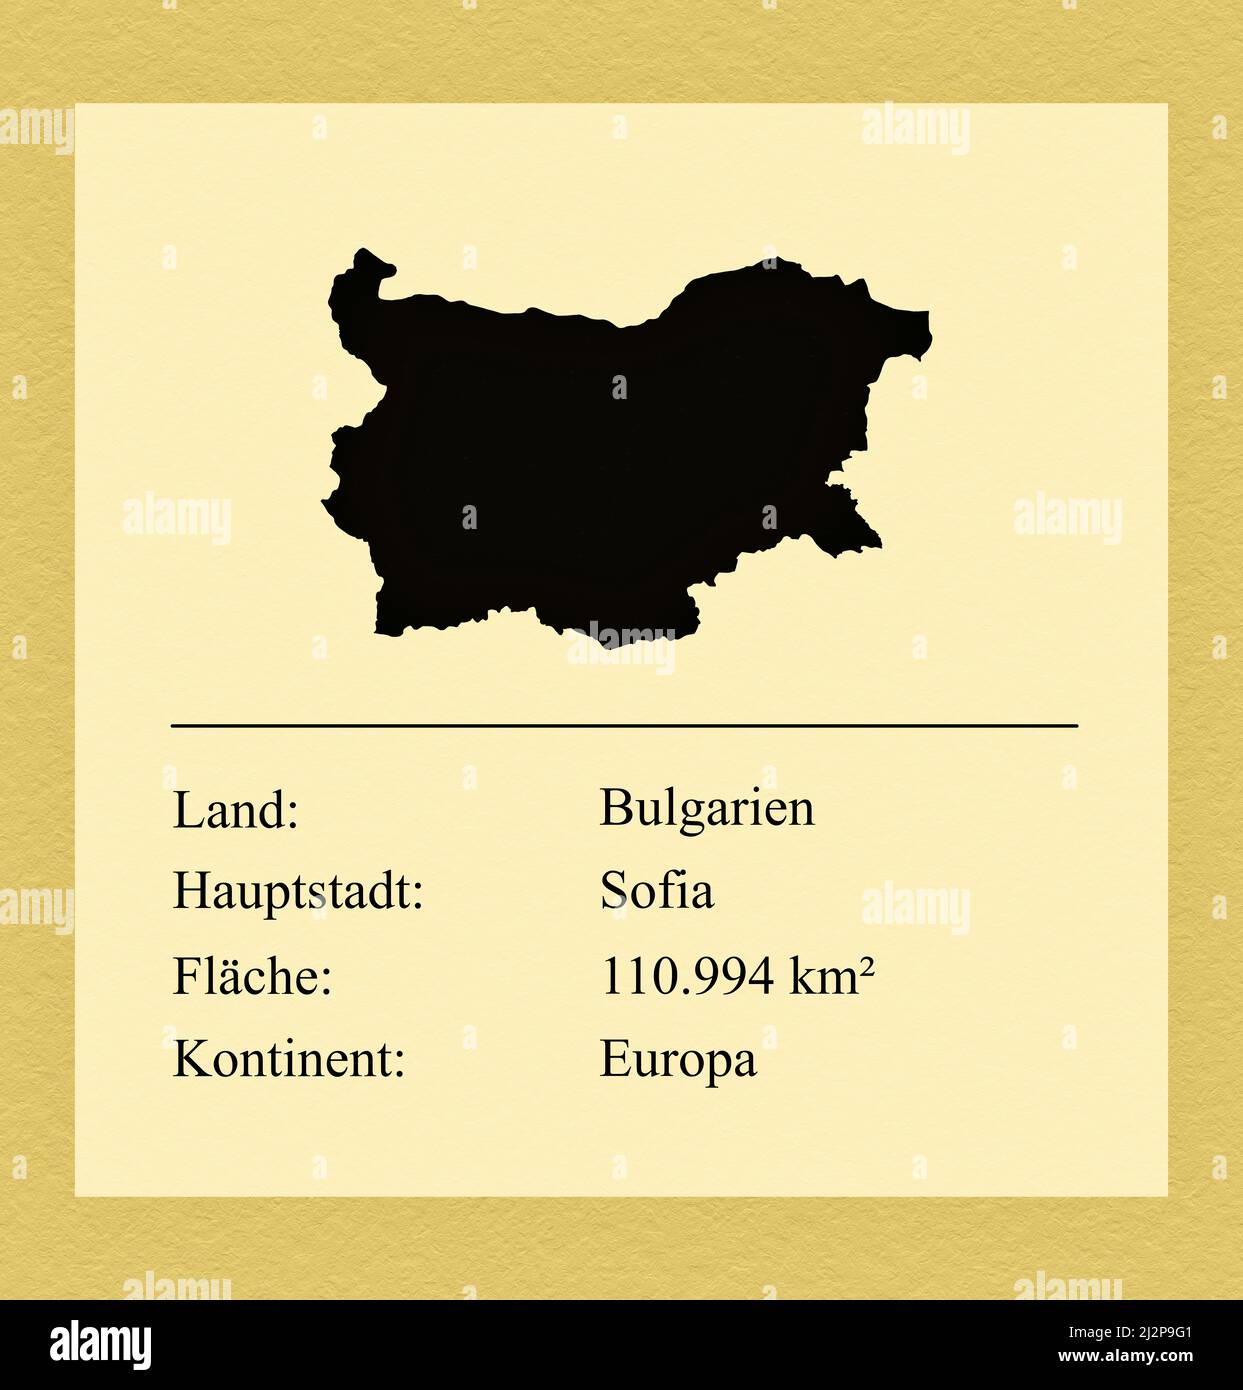 Umrisse des Landes Bulgarien, darunter ein kleiner Steckbrief mit Ländernamen, Hauptstadt, Fläche und Kontinent Foto Stock